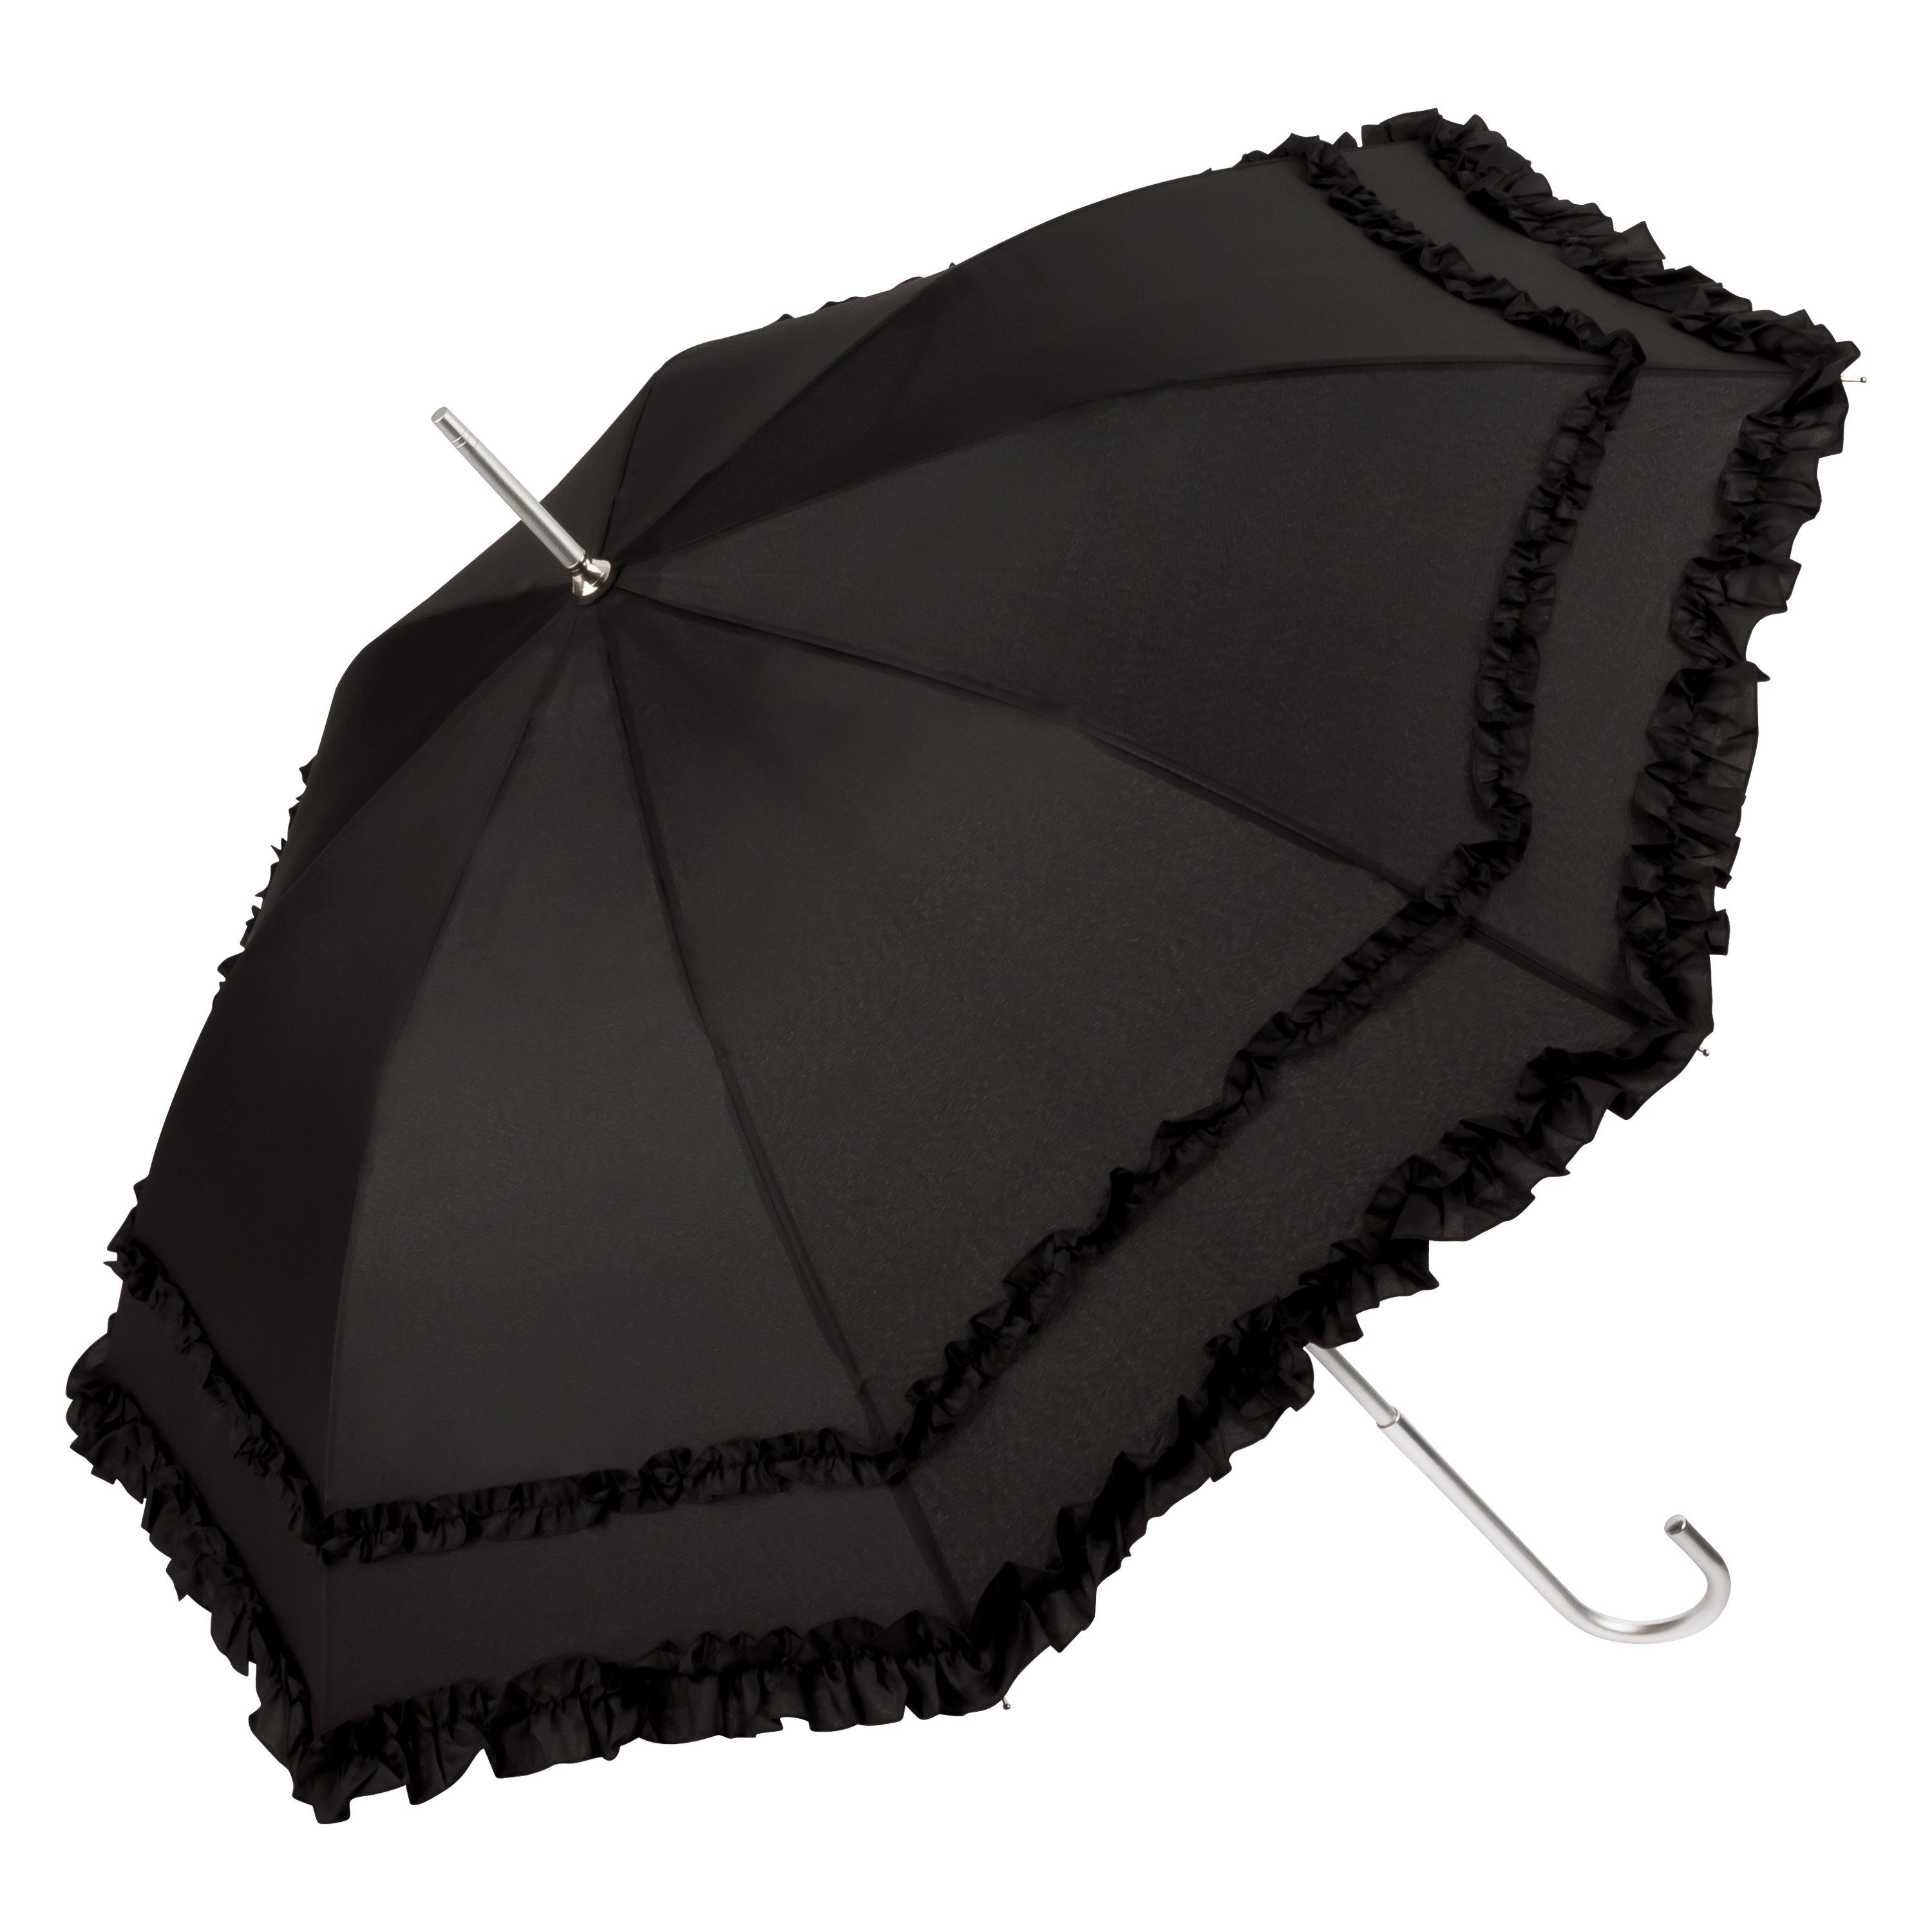 von Lilienfeld Stockregenschirm Regenschirm Sonnenschirm Hochzeitsschirm Mary, zwei Rüschenkanten schwarz